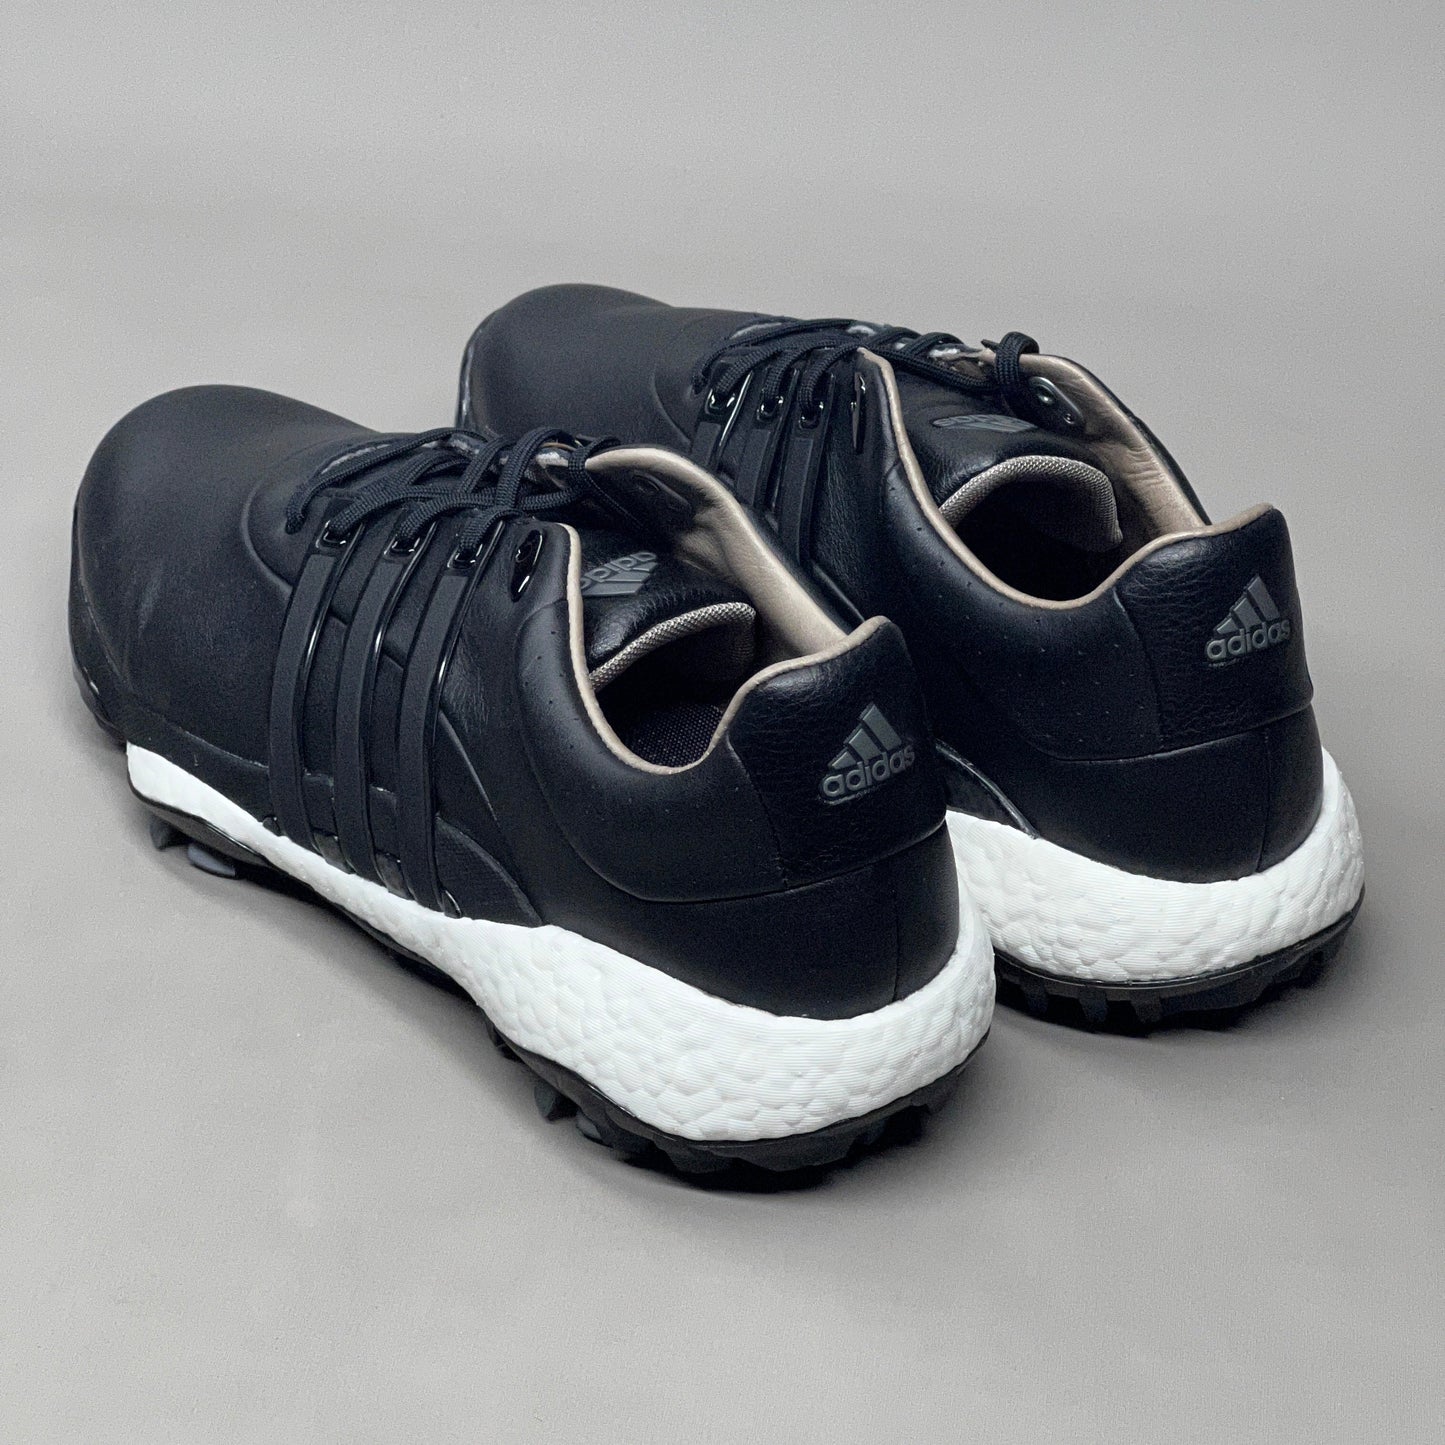 ADIDAS Golf Shoes TOUR360 22 Leather Men's Sz 12 Black / Iron Metallic GZ3158 (New)